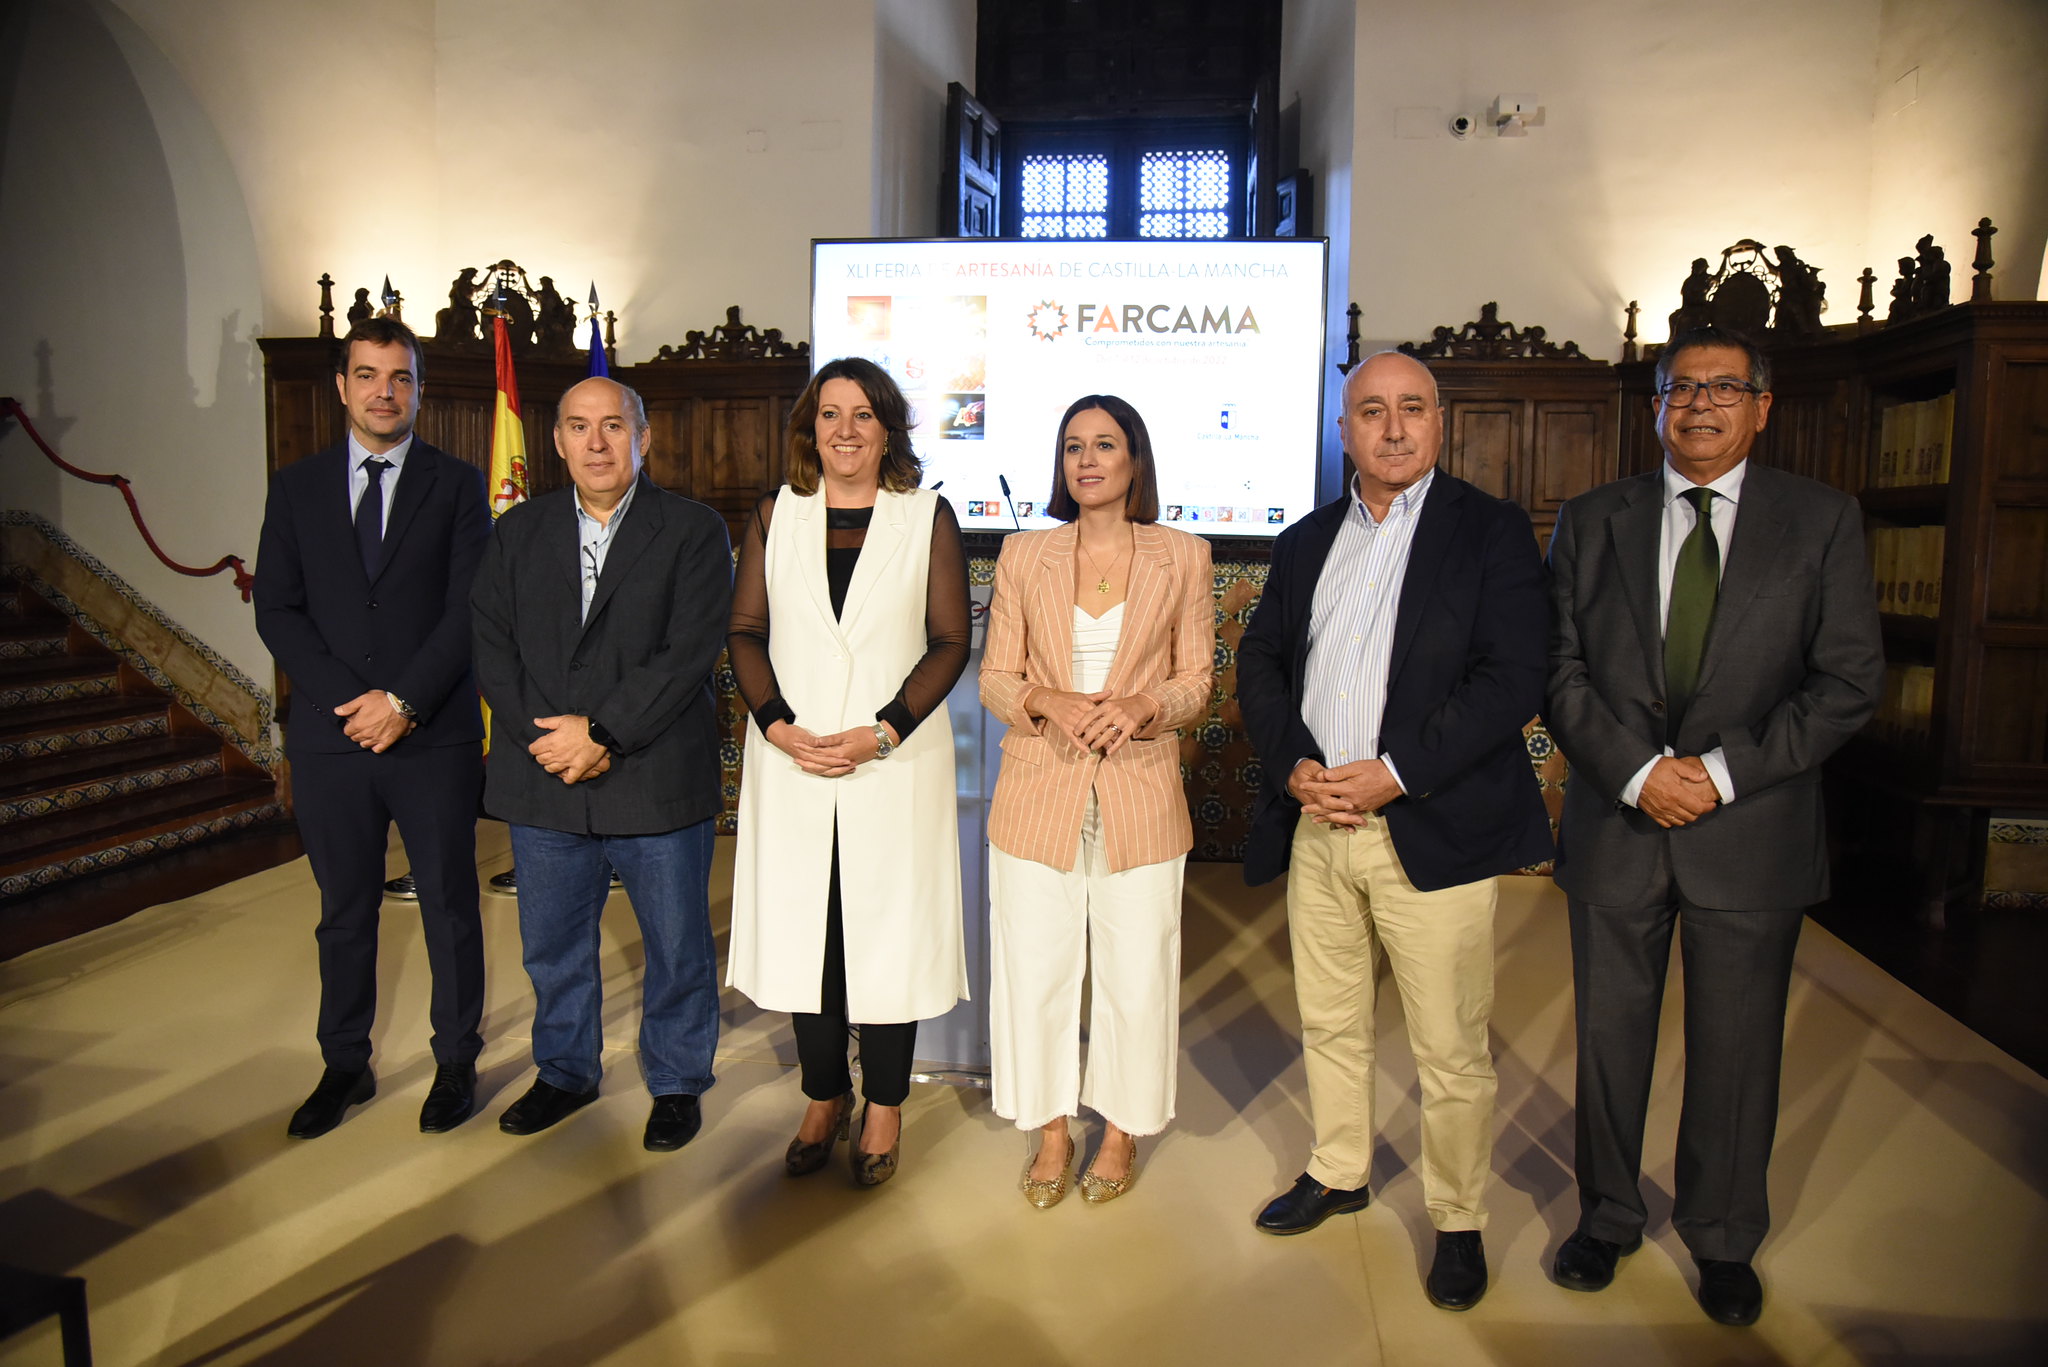 La consejera de Economía, Empresas y Empleo, Patricia Franco, presenta la XLI edición de la Feria de Artesanía de Castilla-La Mancha, FARCAMA.